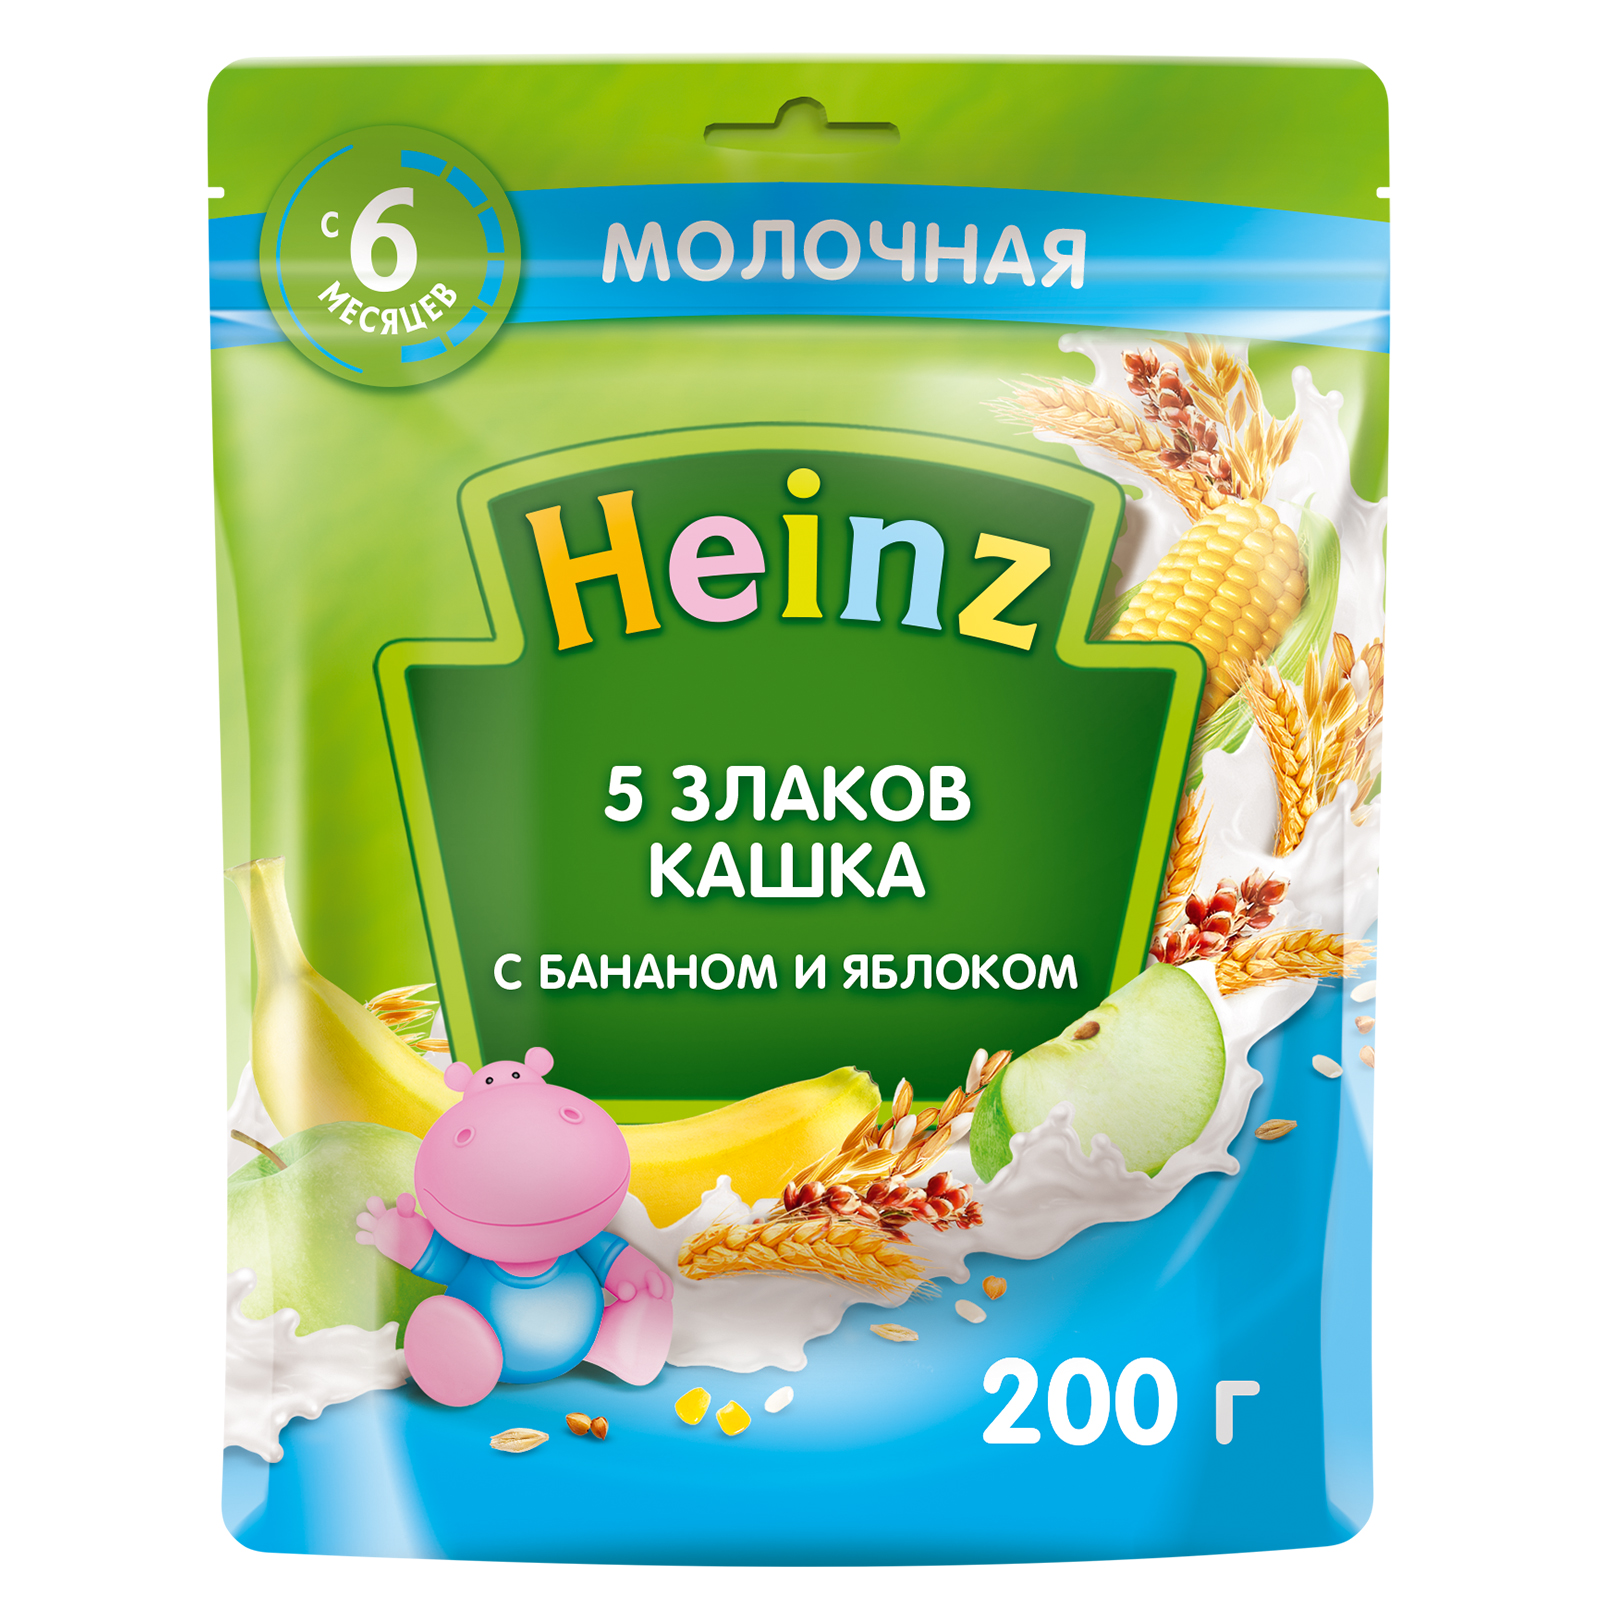 Кашка молочная Heinz 5 злаков Банан, яблоко с 6 месяцев 200 г кашка молочная heinz рисовая с грушей с 4 мес 200 г